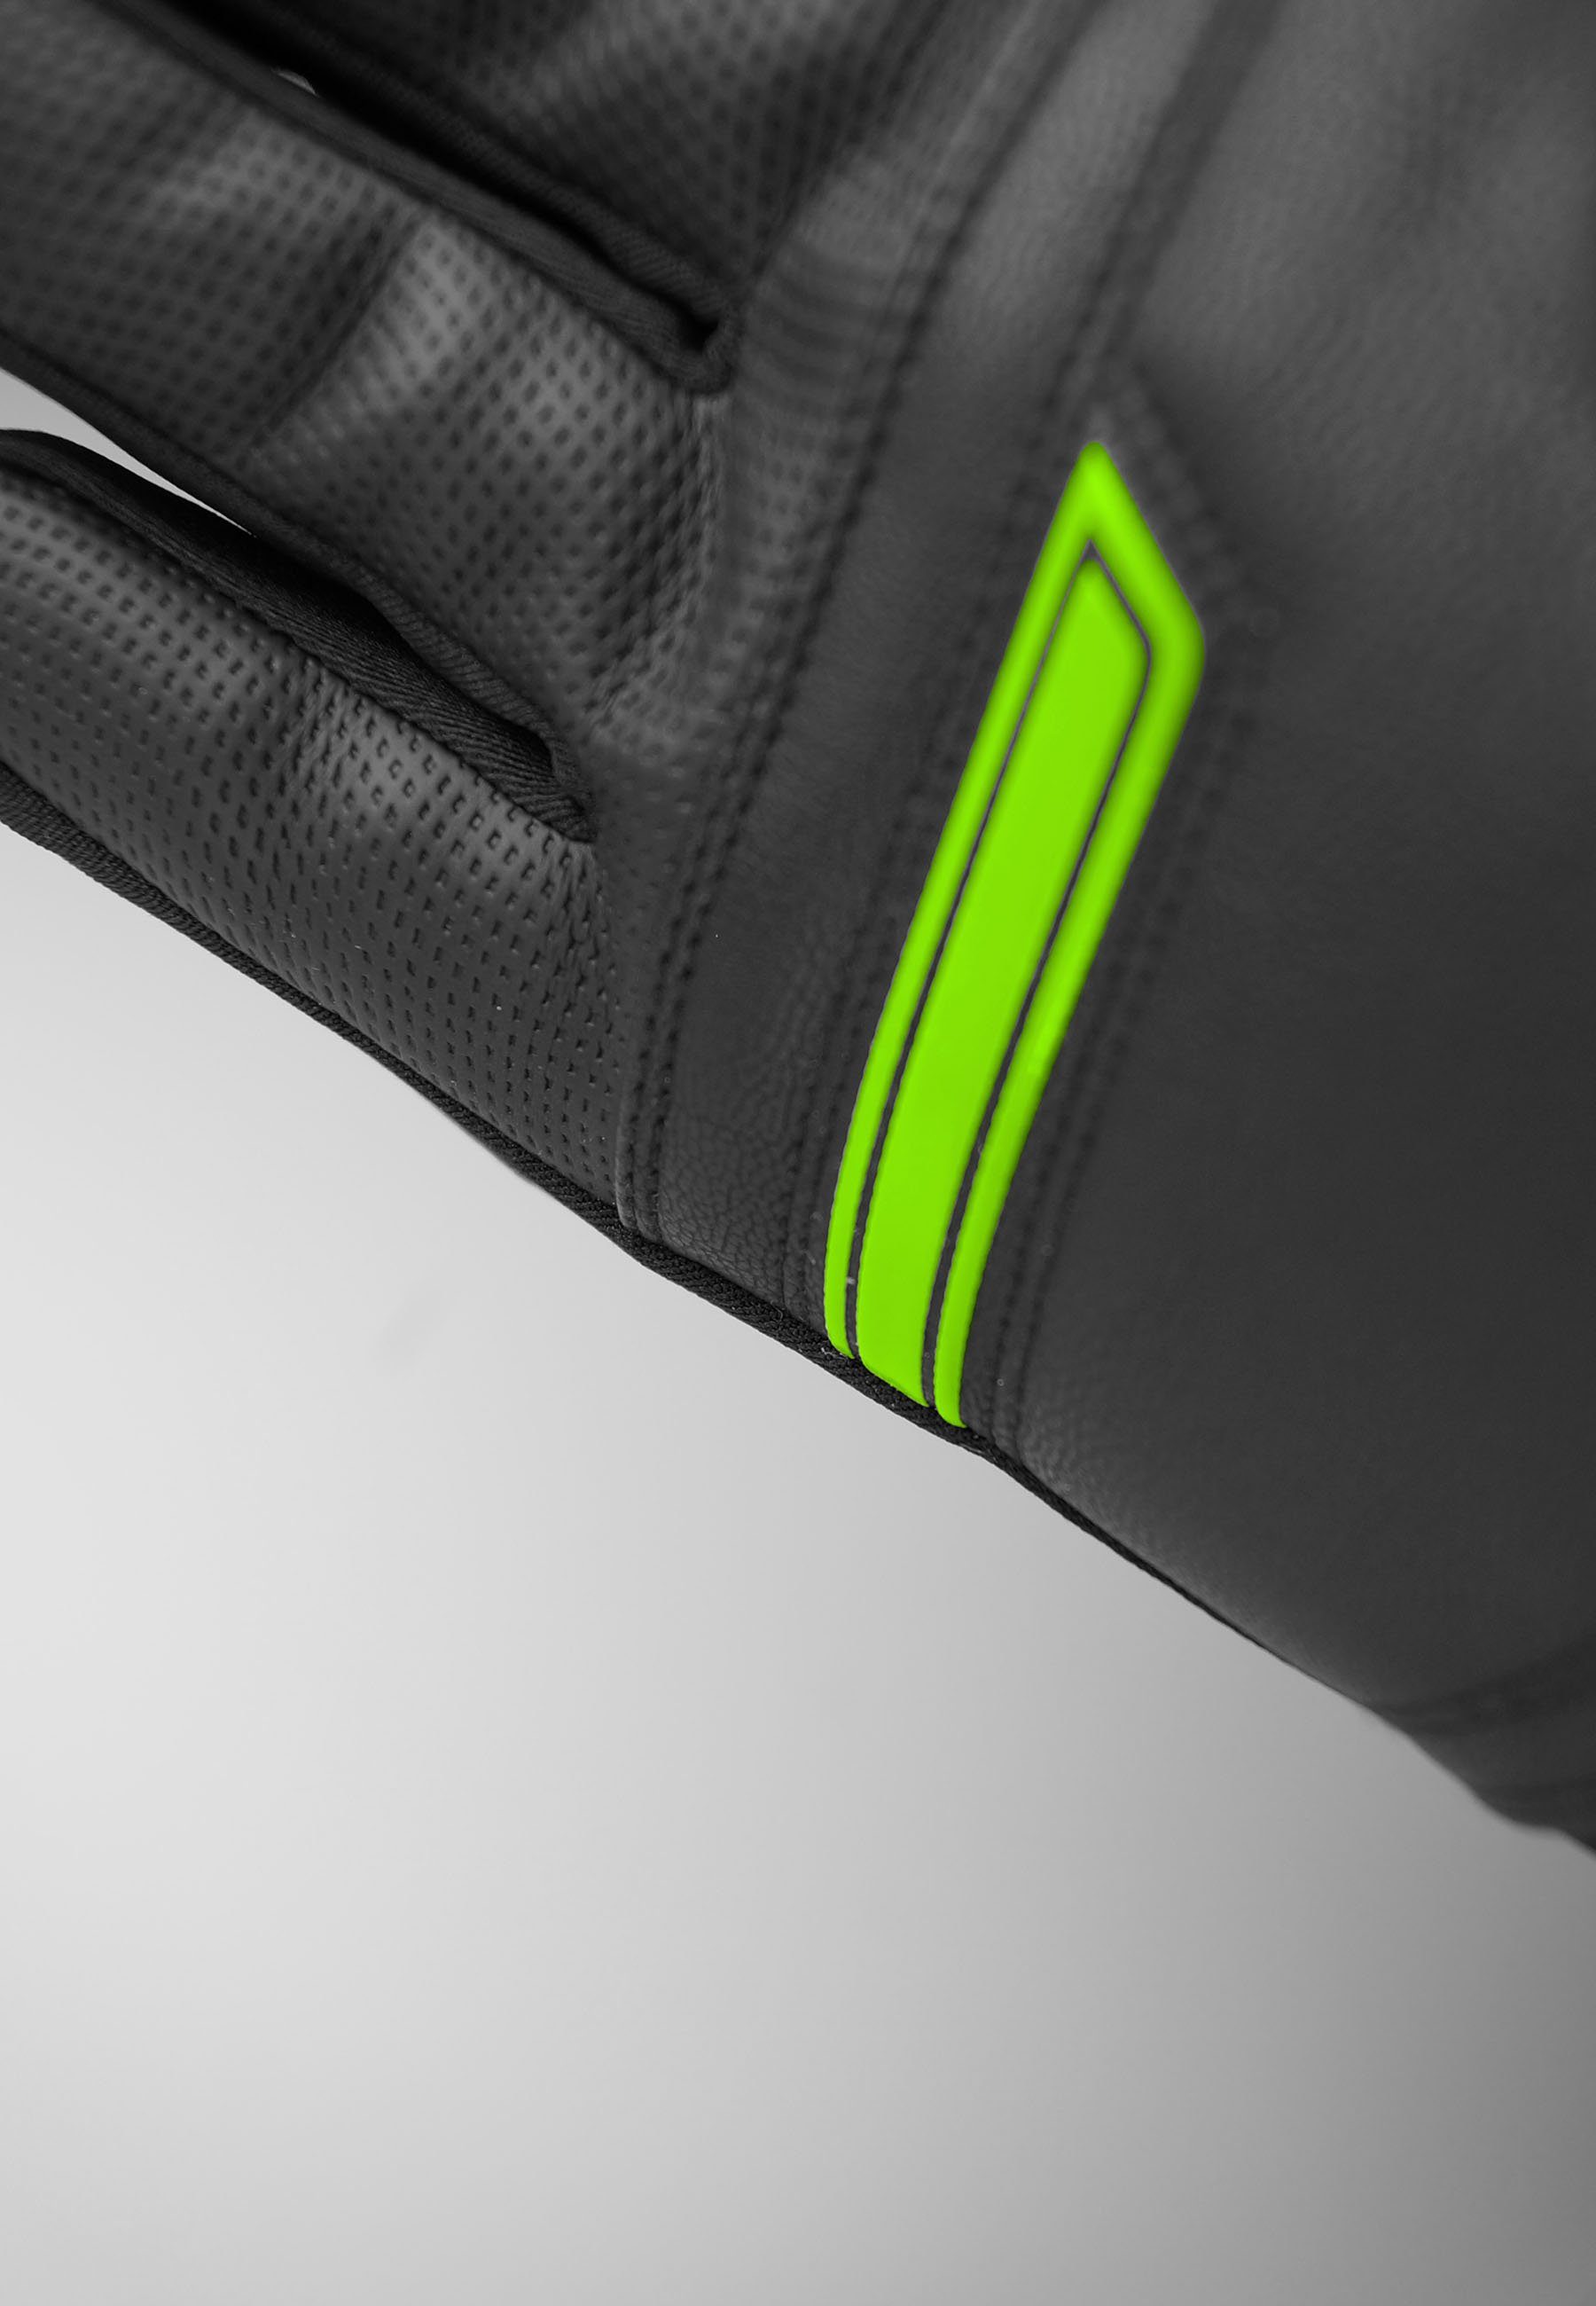 grün-schwarz Crosby in Design XT Skihandschuhe sportlichem Reusch R-TEX®